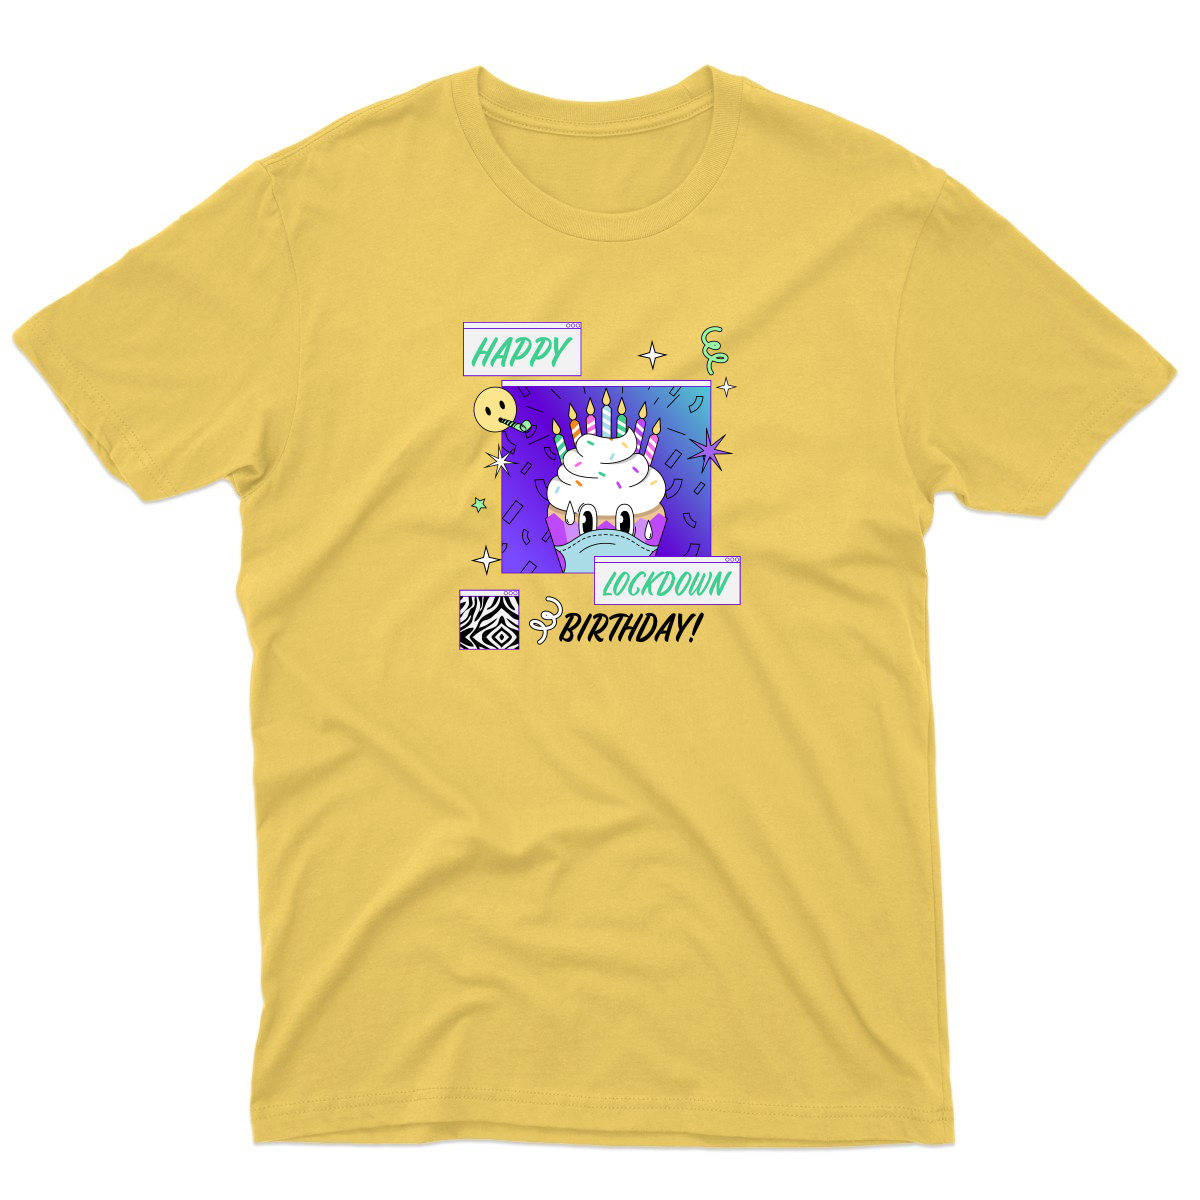 Happy Lock-down Birthday Men's T-shirt | Yellow